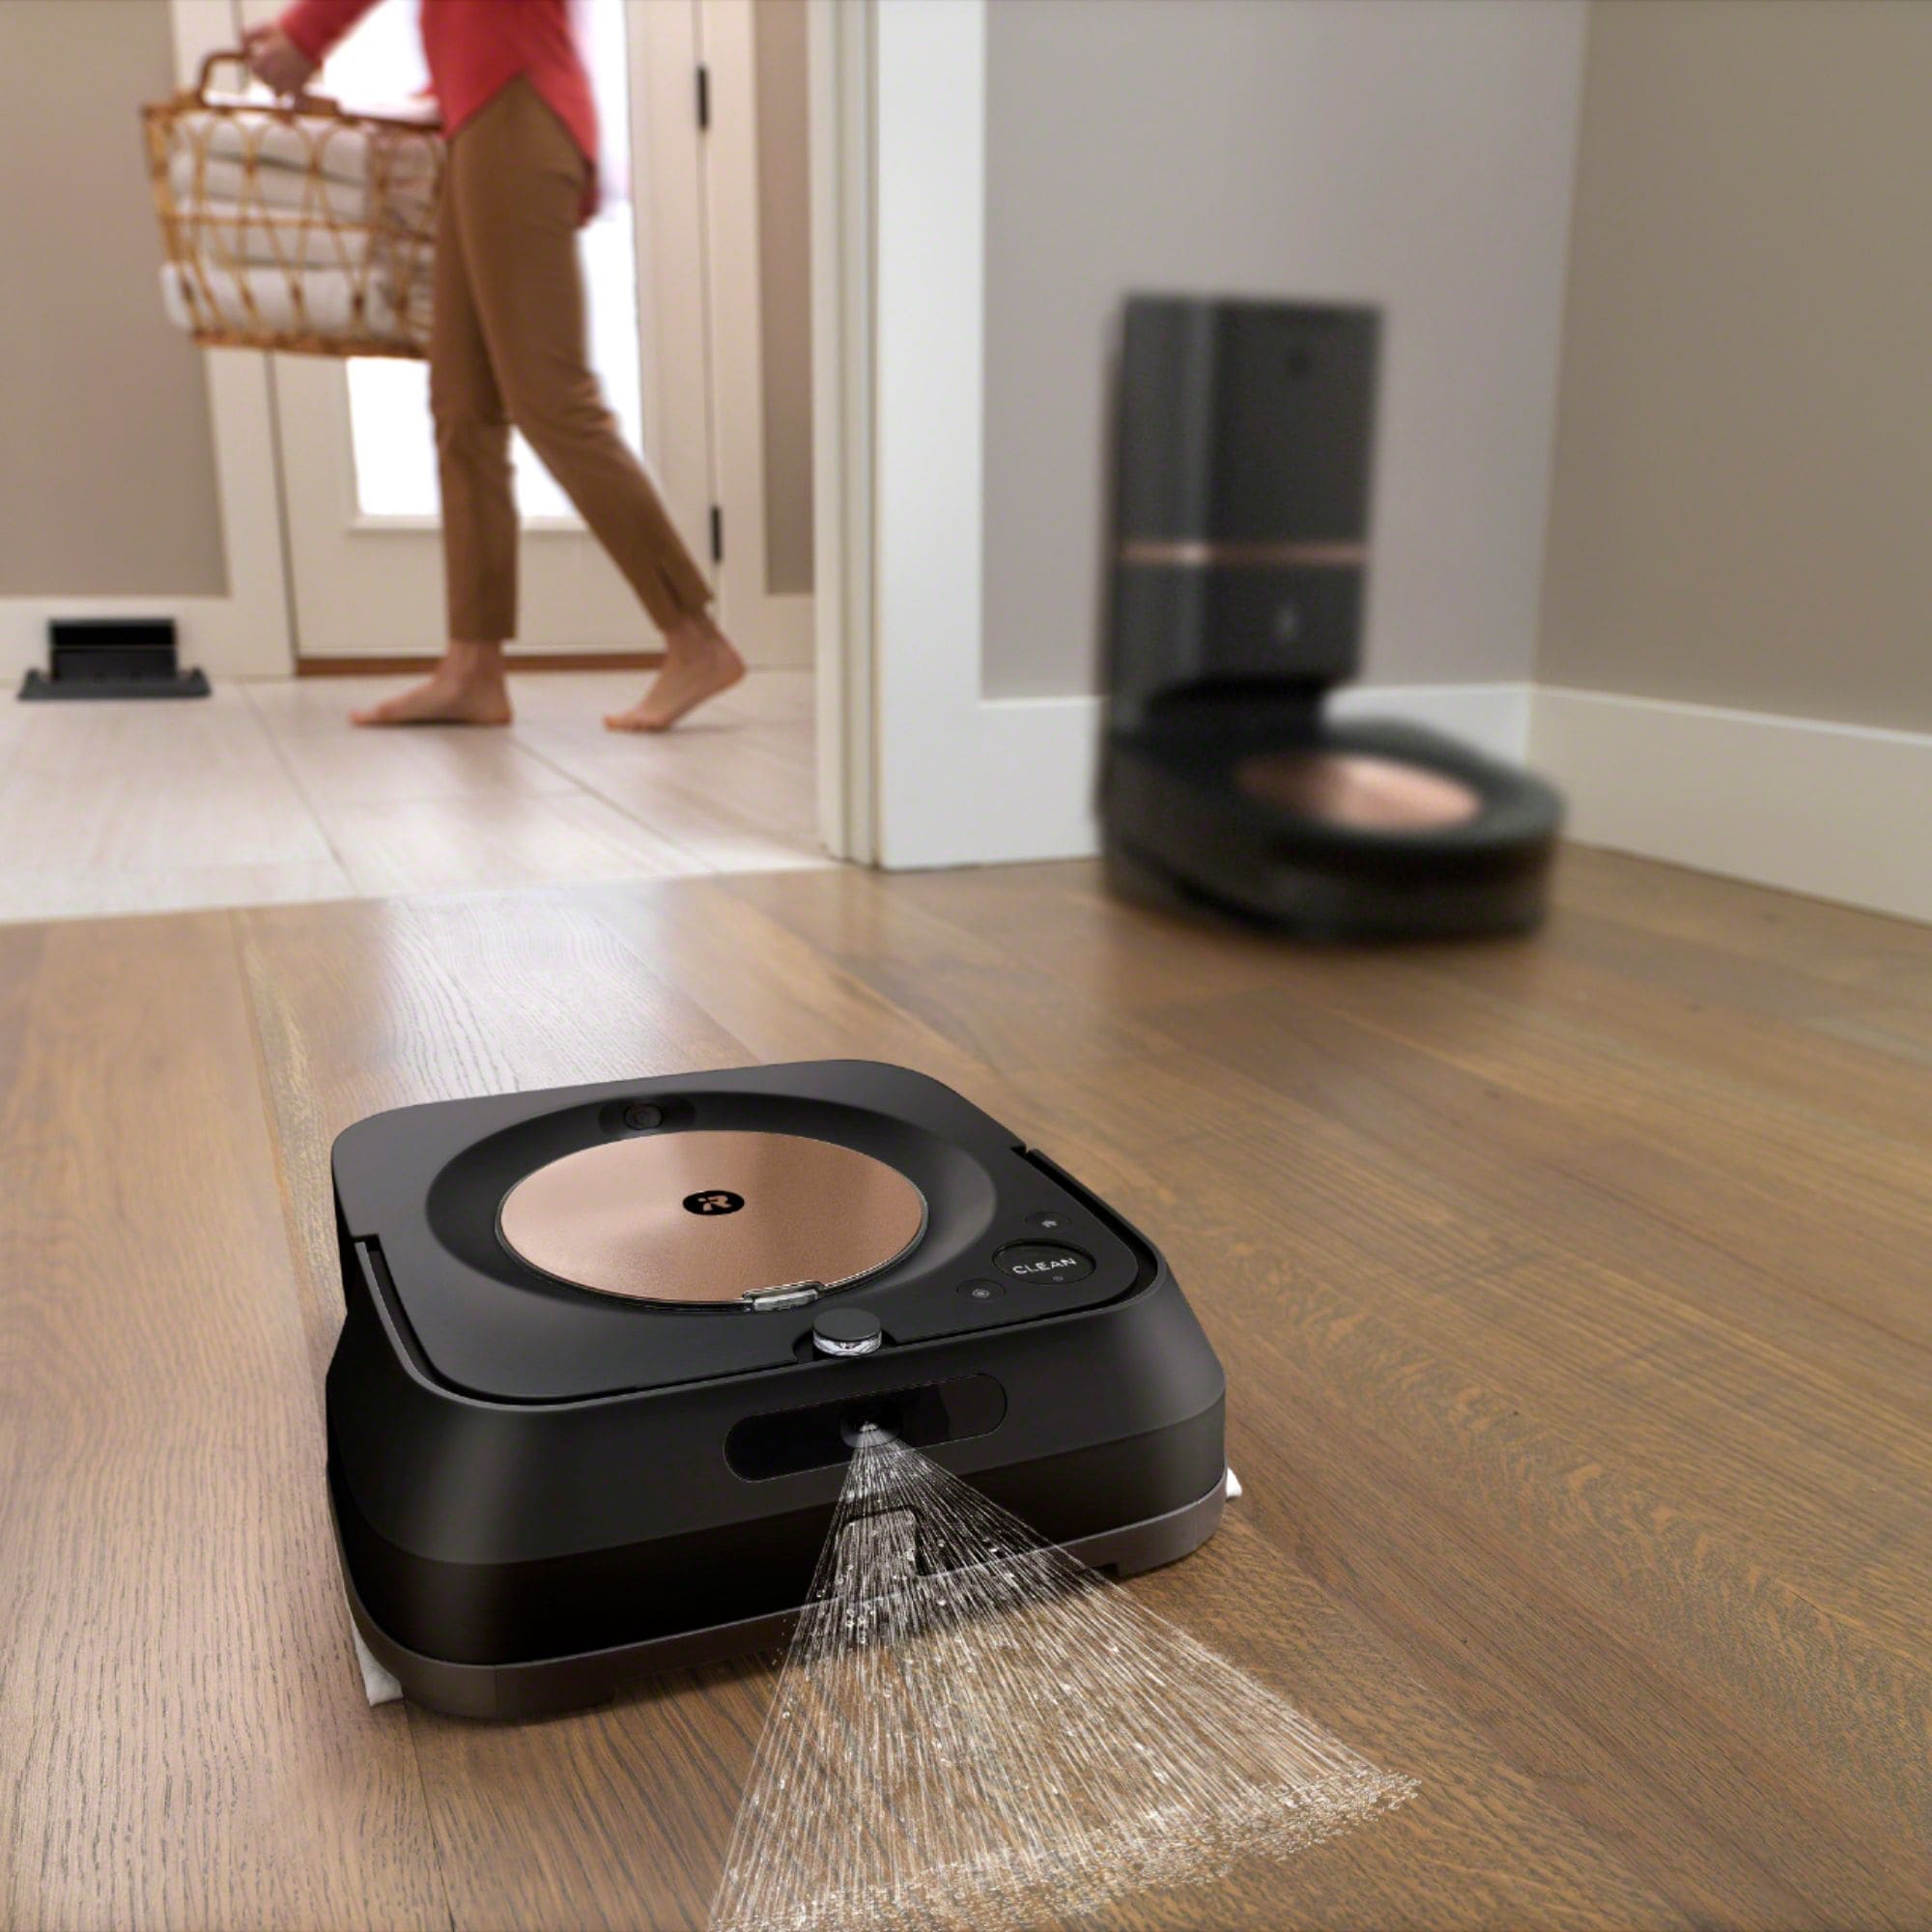 Best Buy iRobot Roomba Robot Vacuum